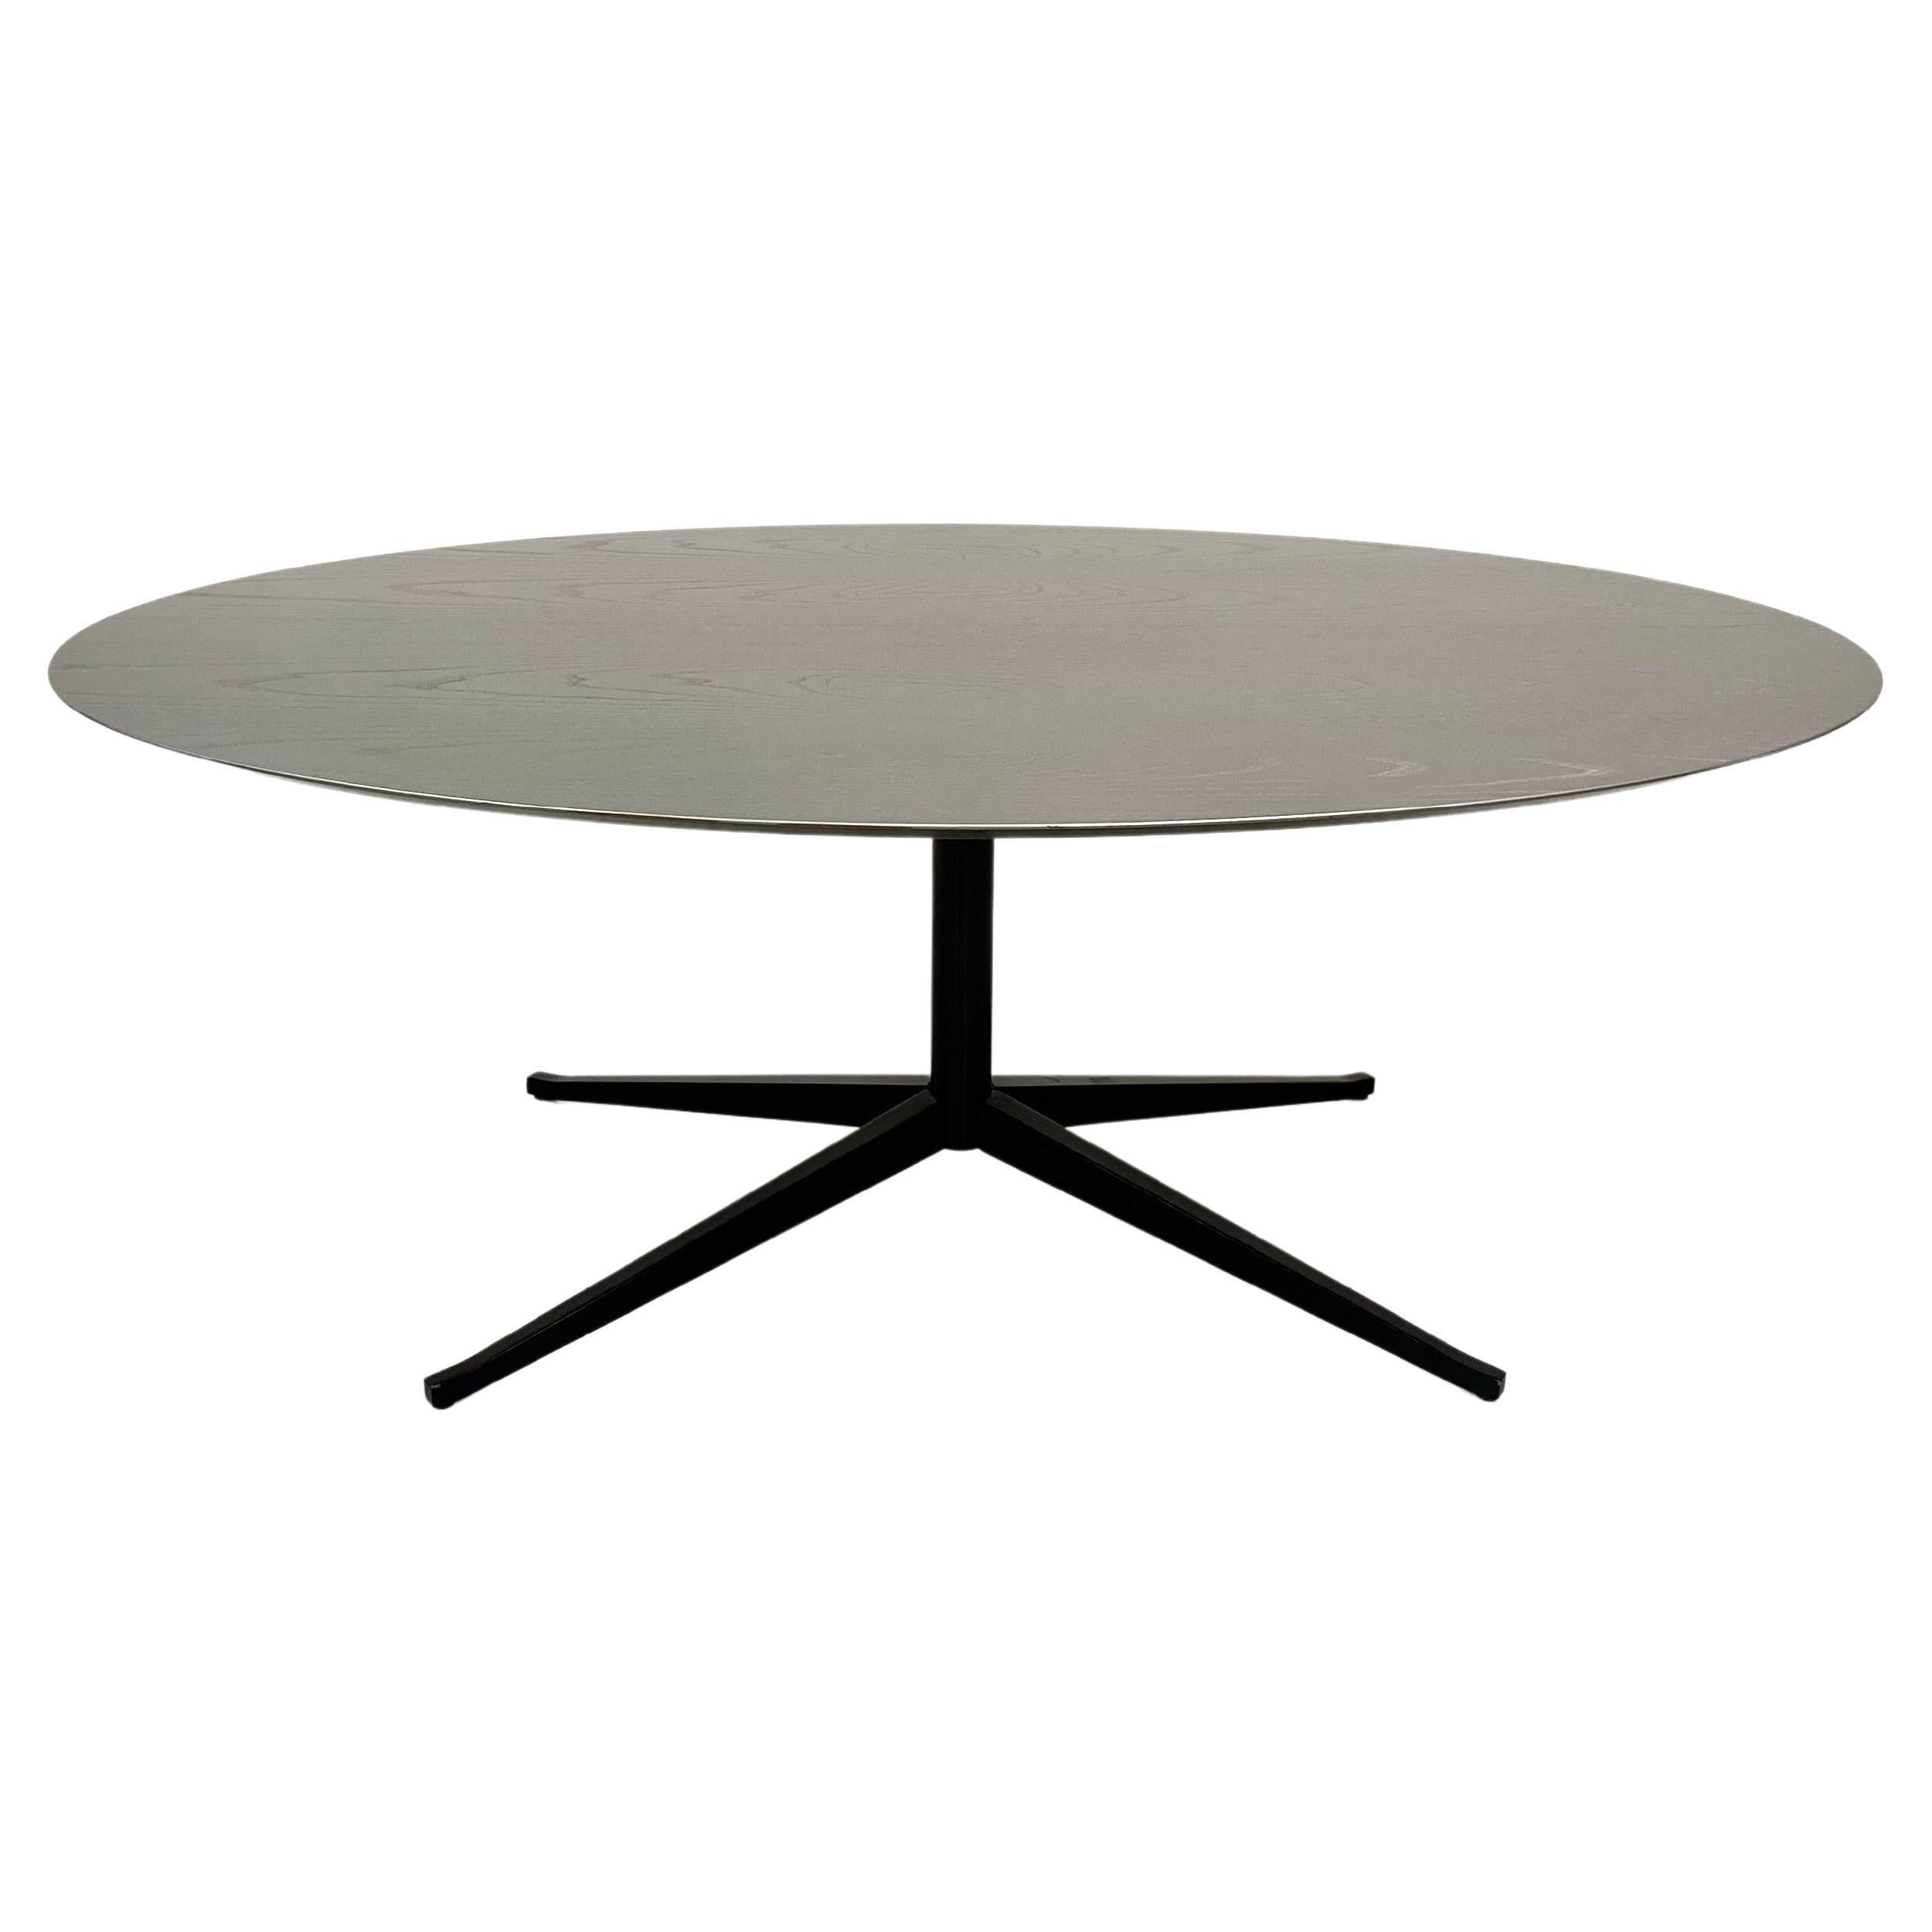 Dieser ovale Tisch von Florence Knoll wurde 1961 von Florence Knoll für Knoll entworfen. Diese seltene Ausgabe mit einer silber lackierten Platte und einem massiven schwarzen Sockel ist in sehr gutem Zustand. 

Florence Knoll bezeichnete ihre